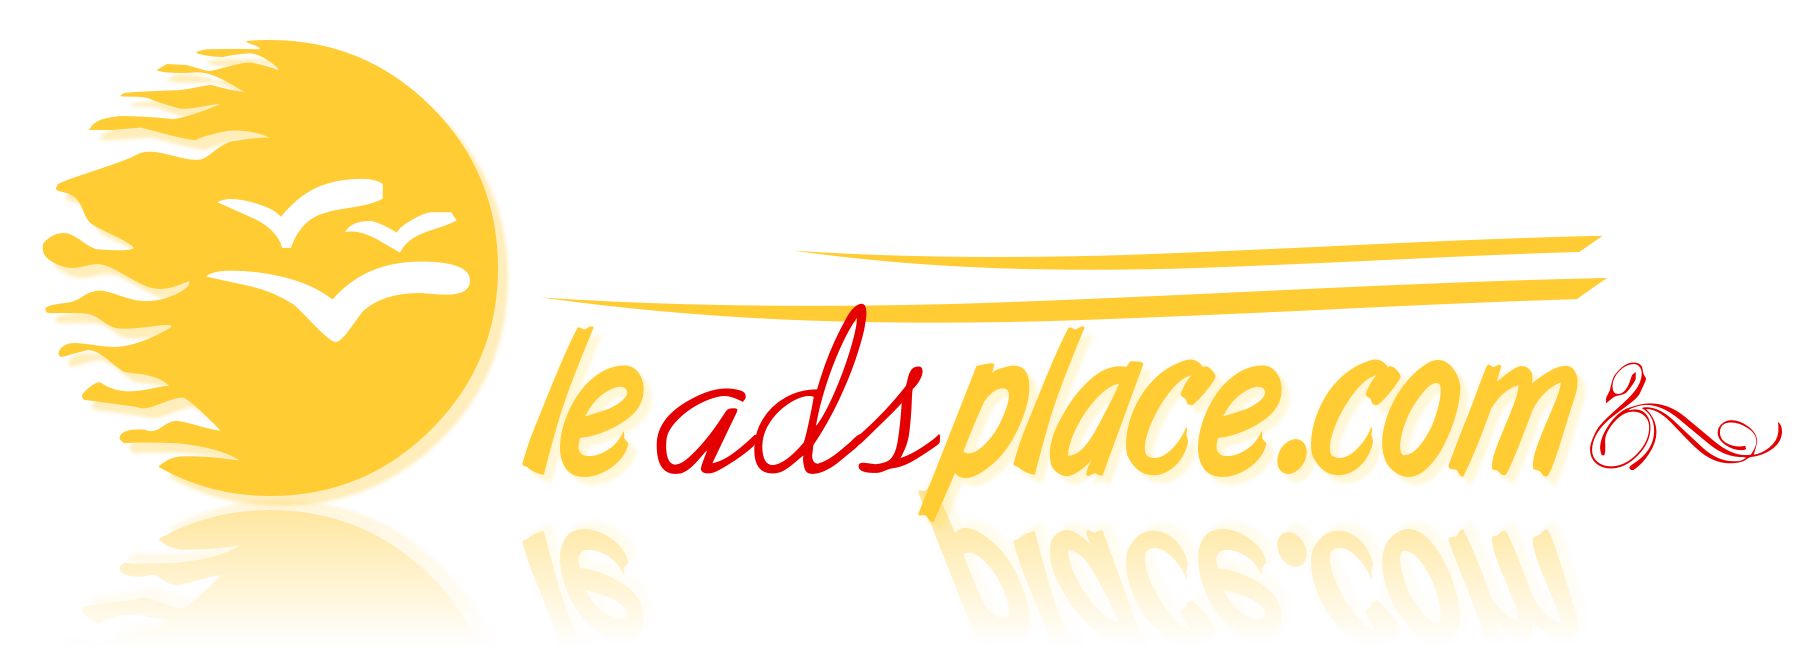 leadsplace.com - логотип - дизайнер BeSSpaloFF